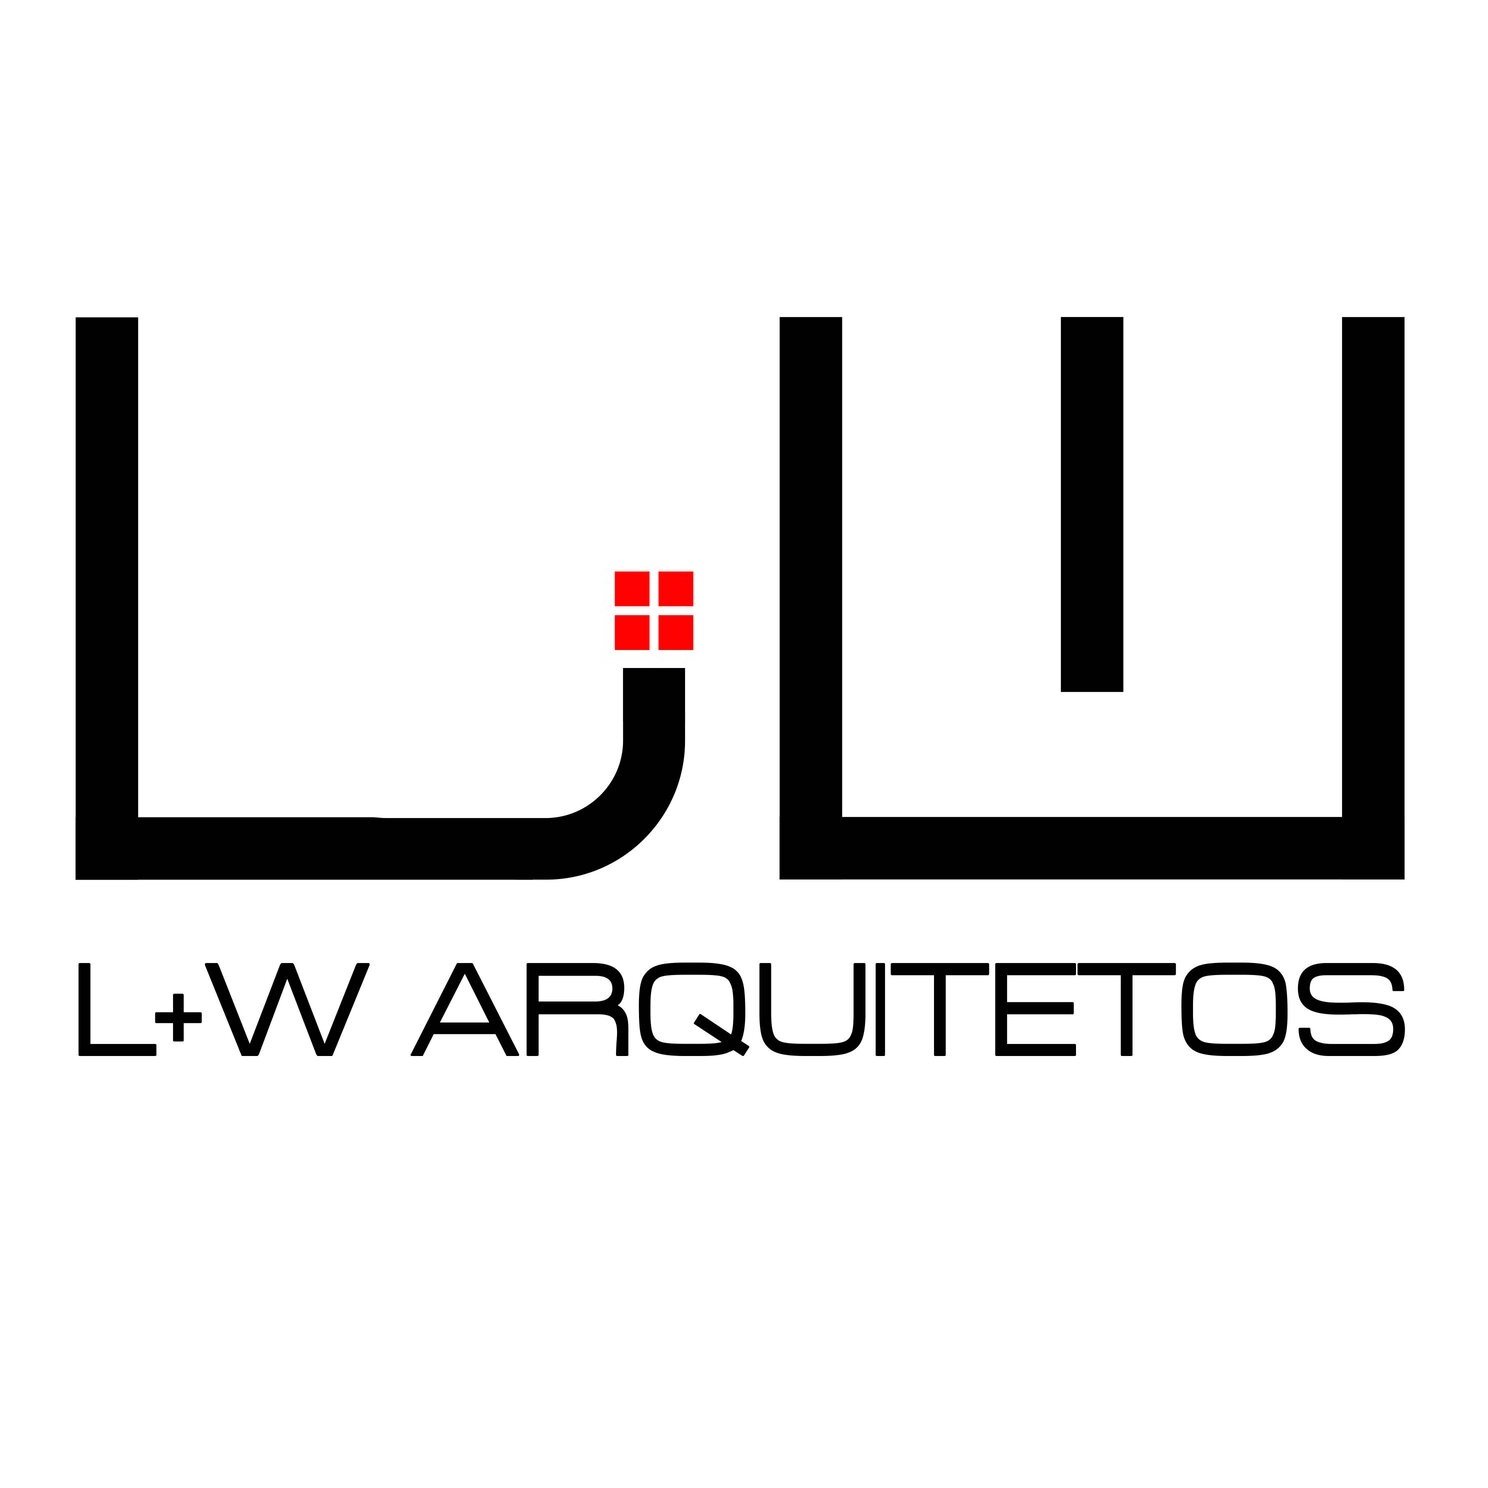 L+W Arquitetos